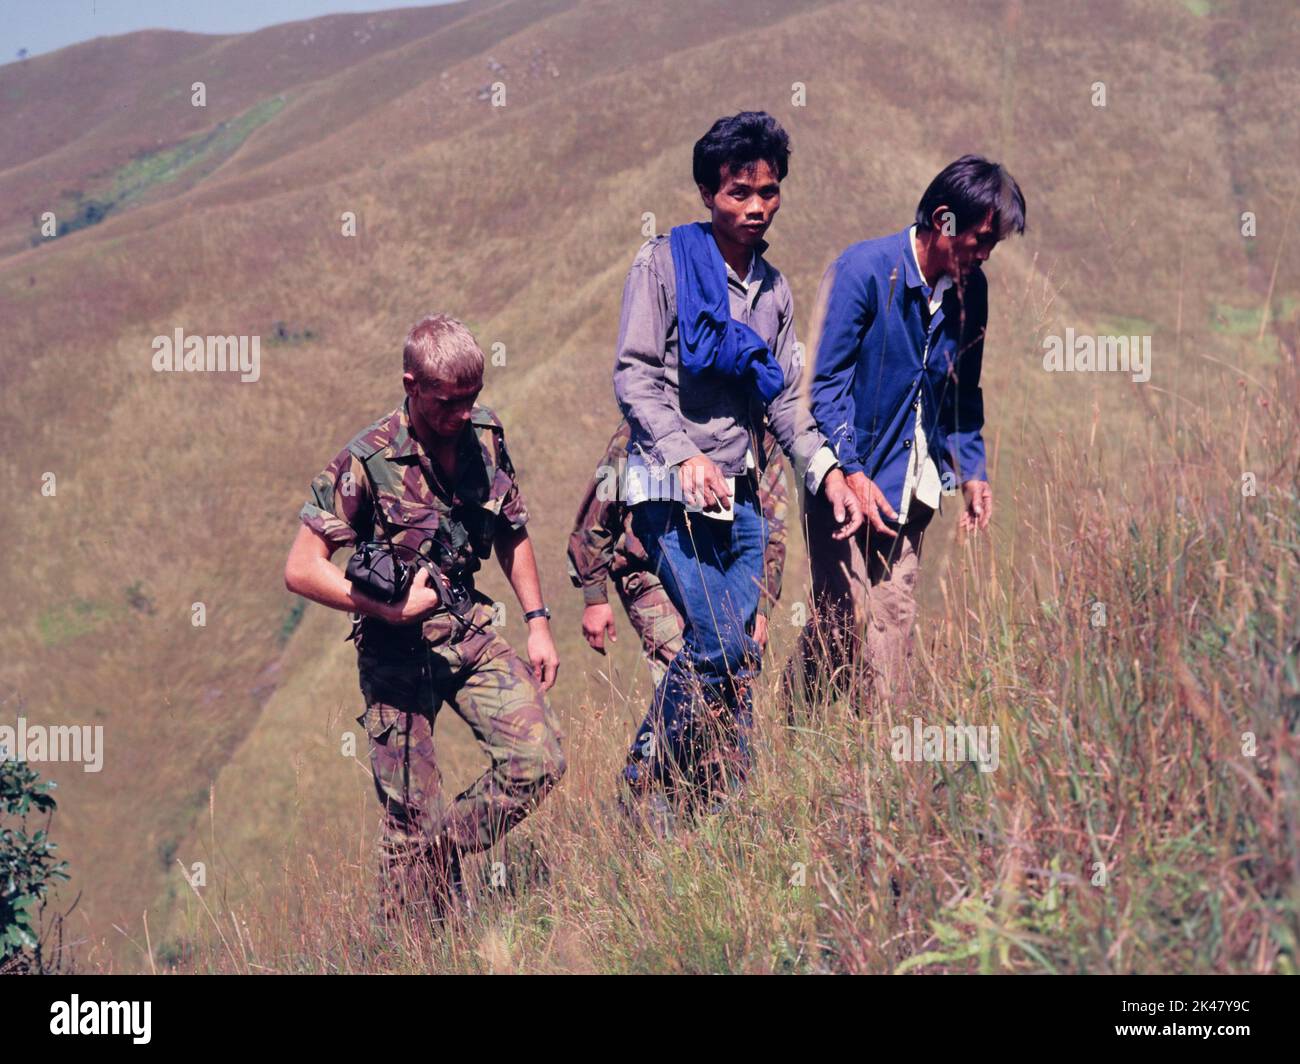 Dos hombres inmigrantes ilegales, que acaban de ser arrestados en Hong Kong, son escoltados hasta una colina cerca de la frontera en los Nuevos Territorios de Hong Kong, por dos soldados del Regimiento de Cheshire, del Ejército Británico. Oct 1984. El soldado de la izquierda lleva un antiguo paquete de radio. Foto de stock